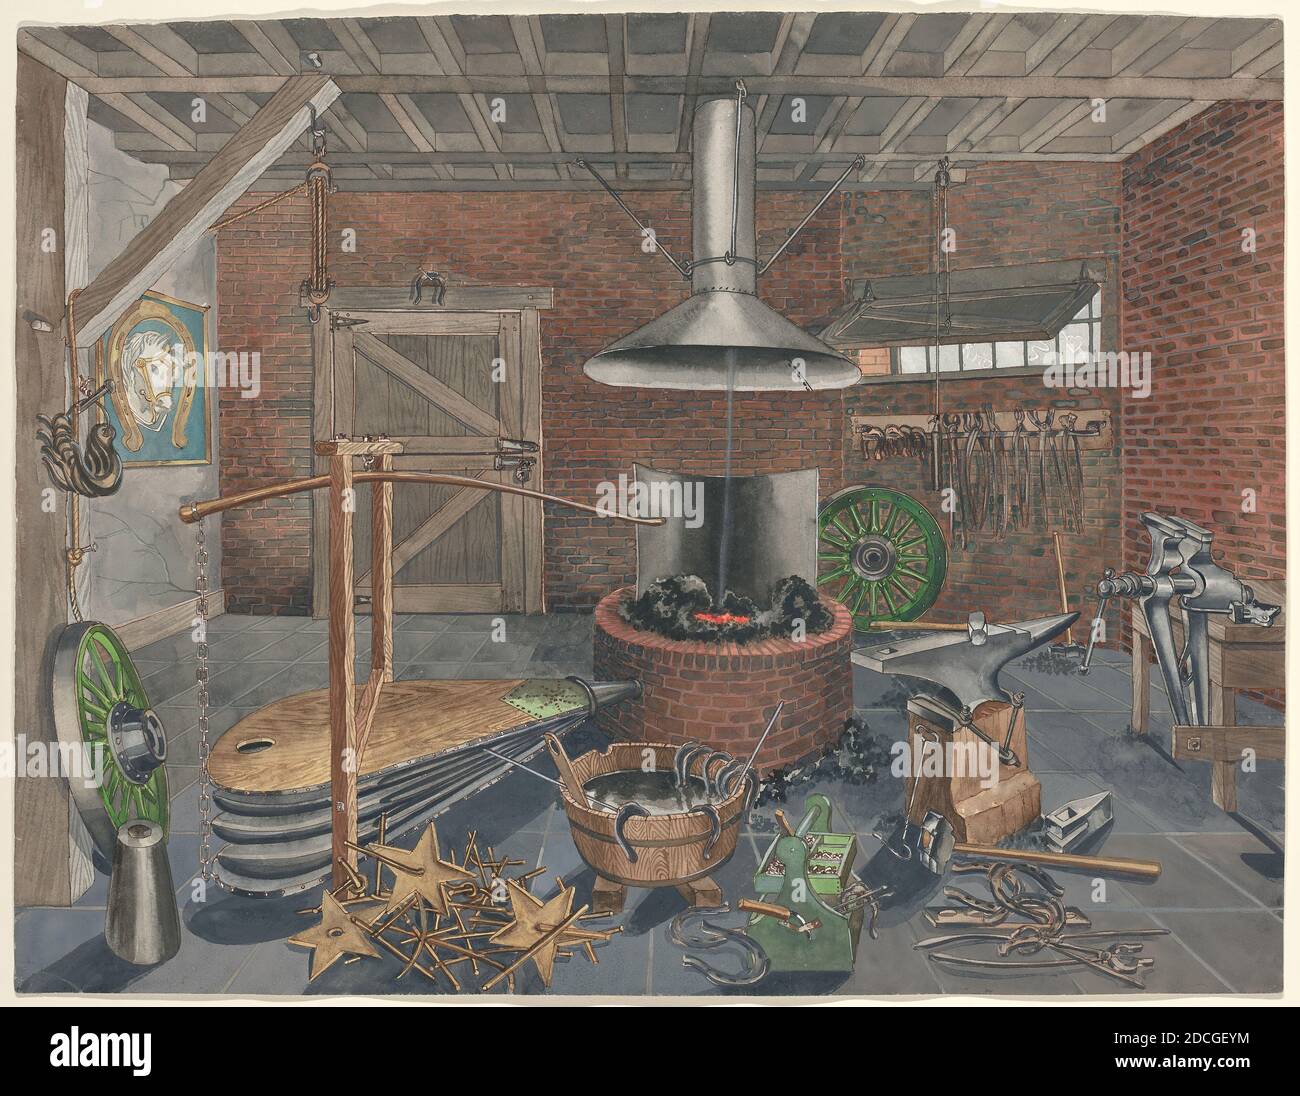 Perkins Harnly, (artista), americano, 1901 - 1986, Blacksmith Shop, 1935/1942, acquerello, gouache, penna e inchiostro, e grafite su carta, totale: 51 x 67 cm (20 1/16 x 26 3/8 pollici Foto Stock